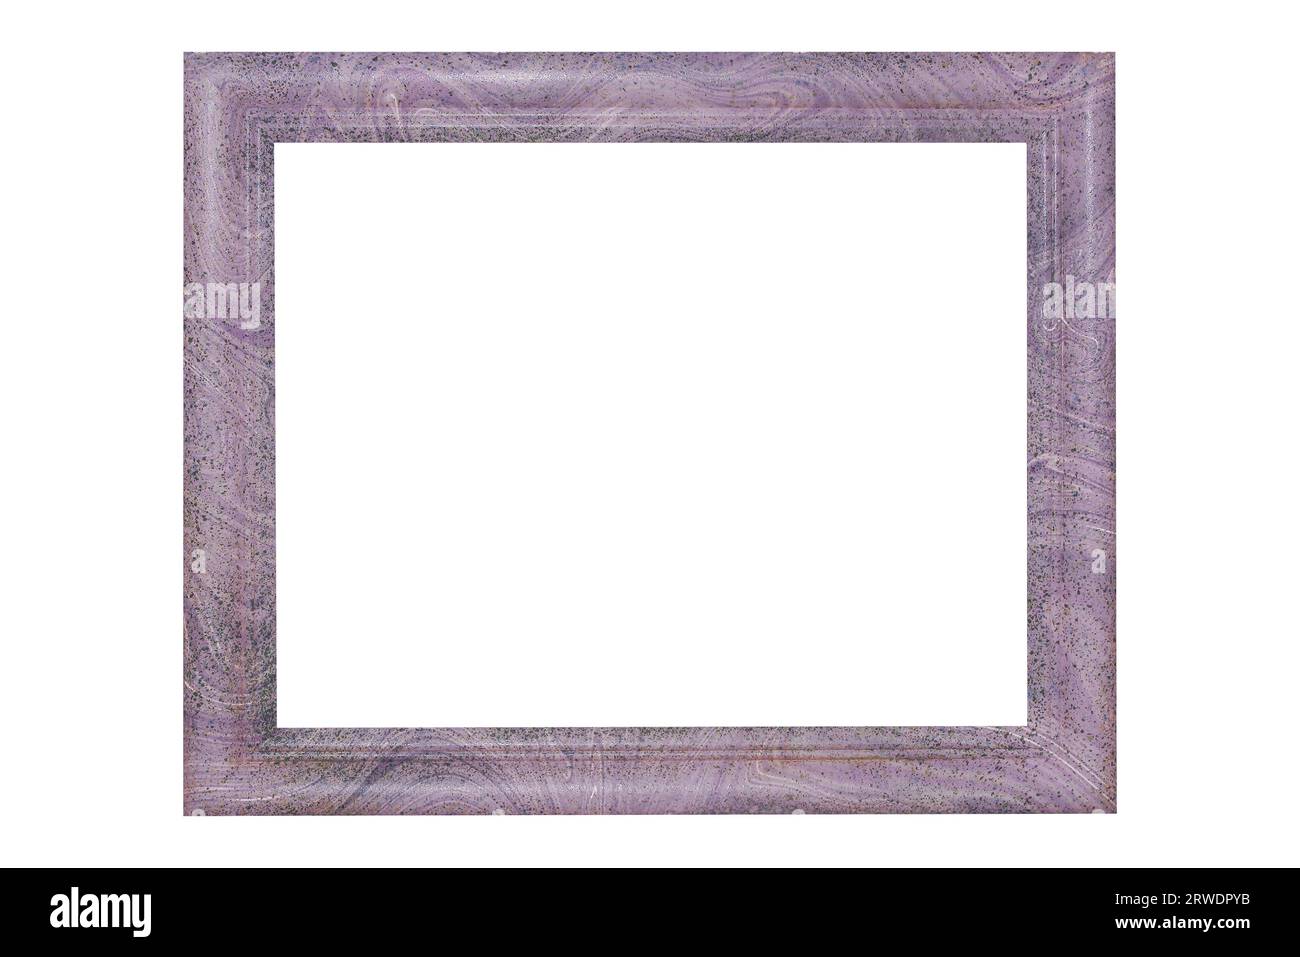 Cornice fotografica in marmo con vernice cosparsa sfondo bianco isolato di colore viola moderno Foto Stock